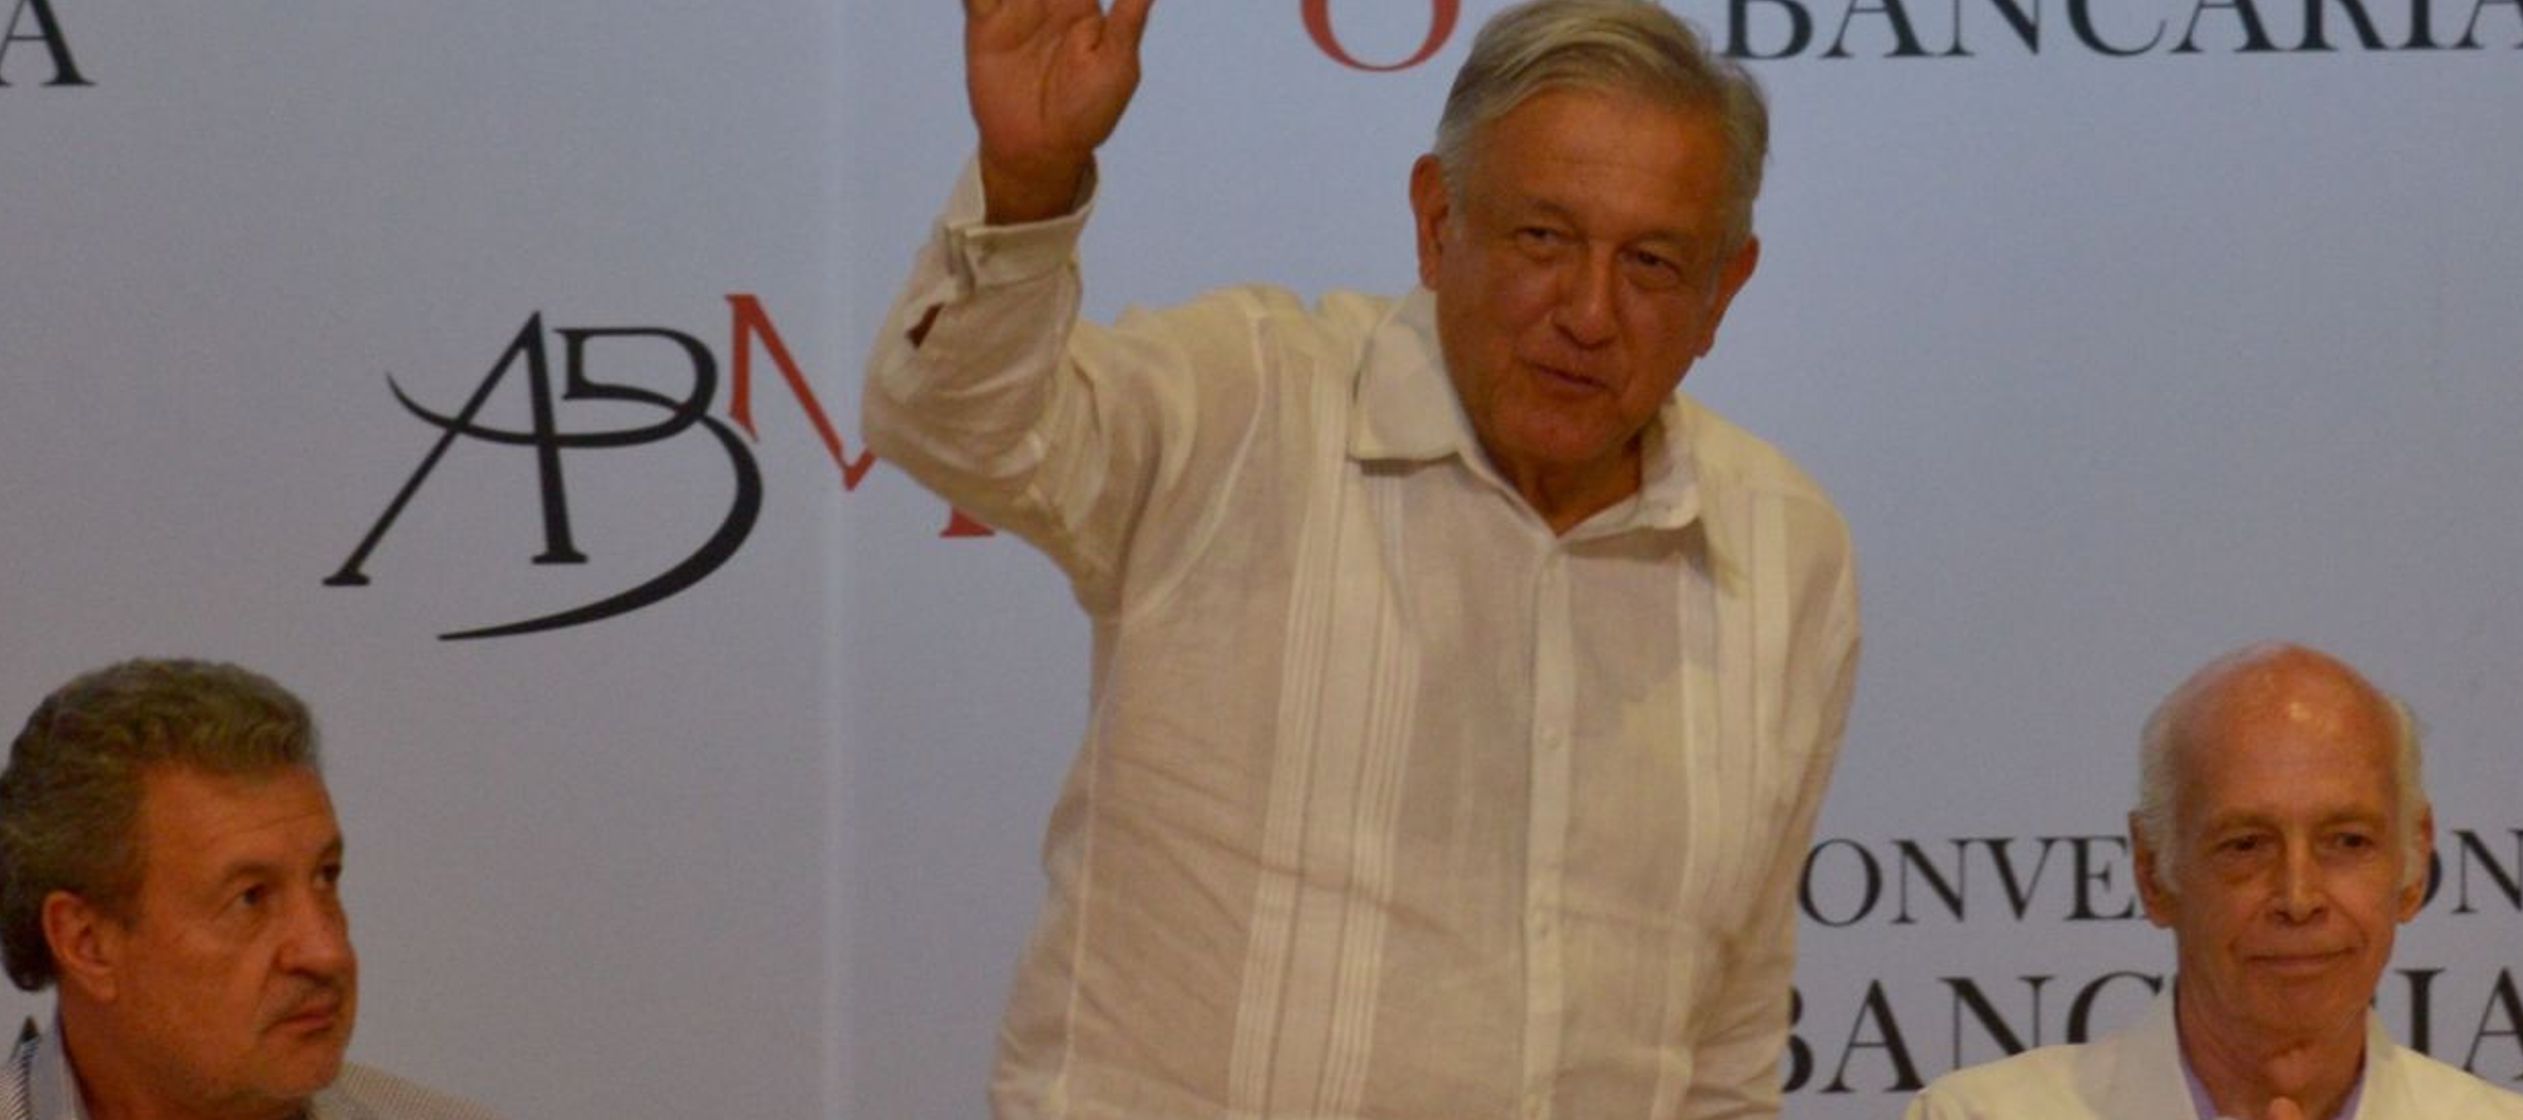 El discurso que ofreció López Obrador a los banqueros por casi 40 minutos, primero...